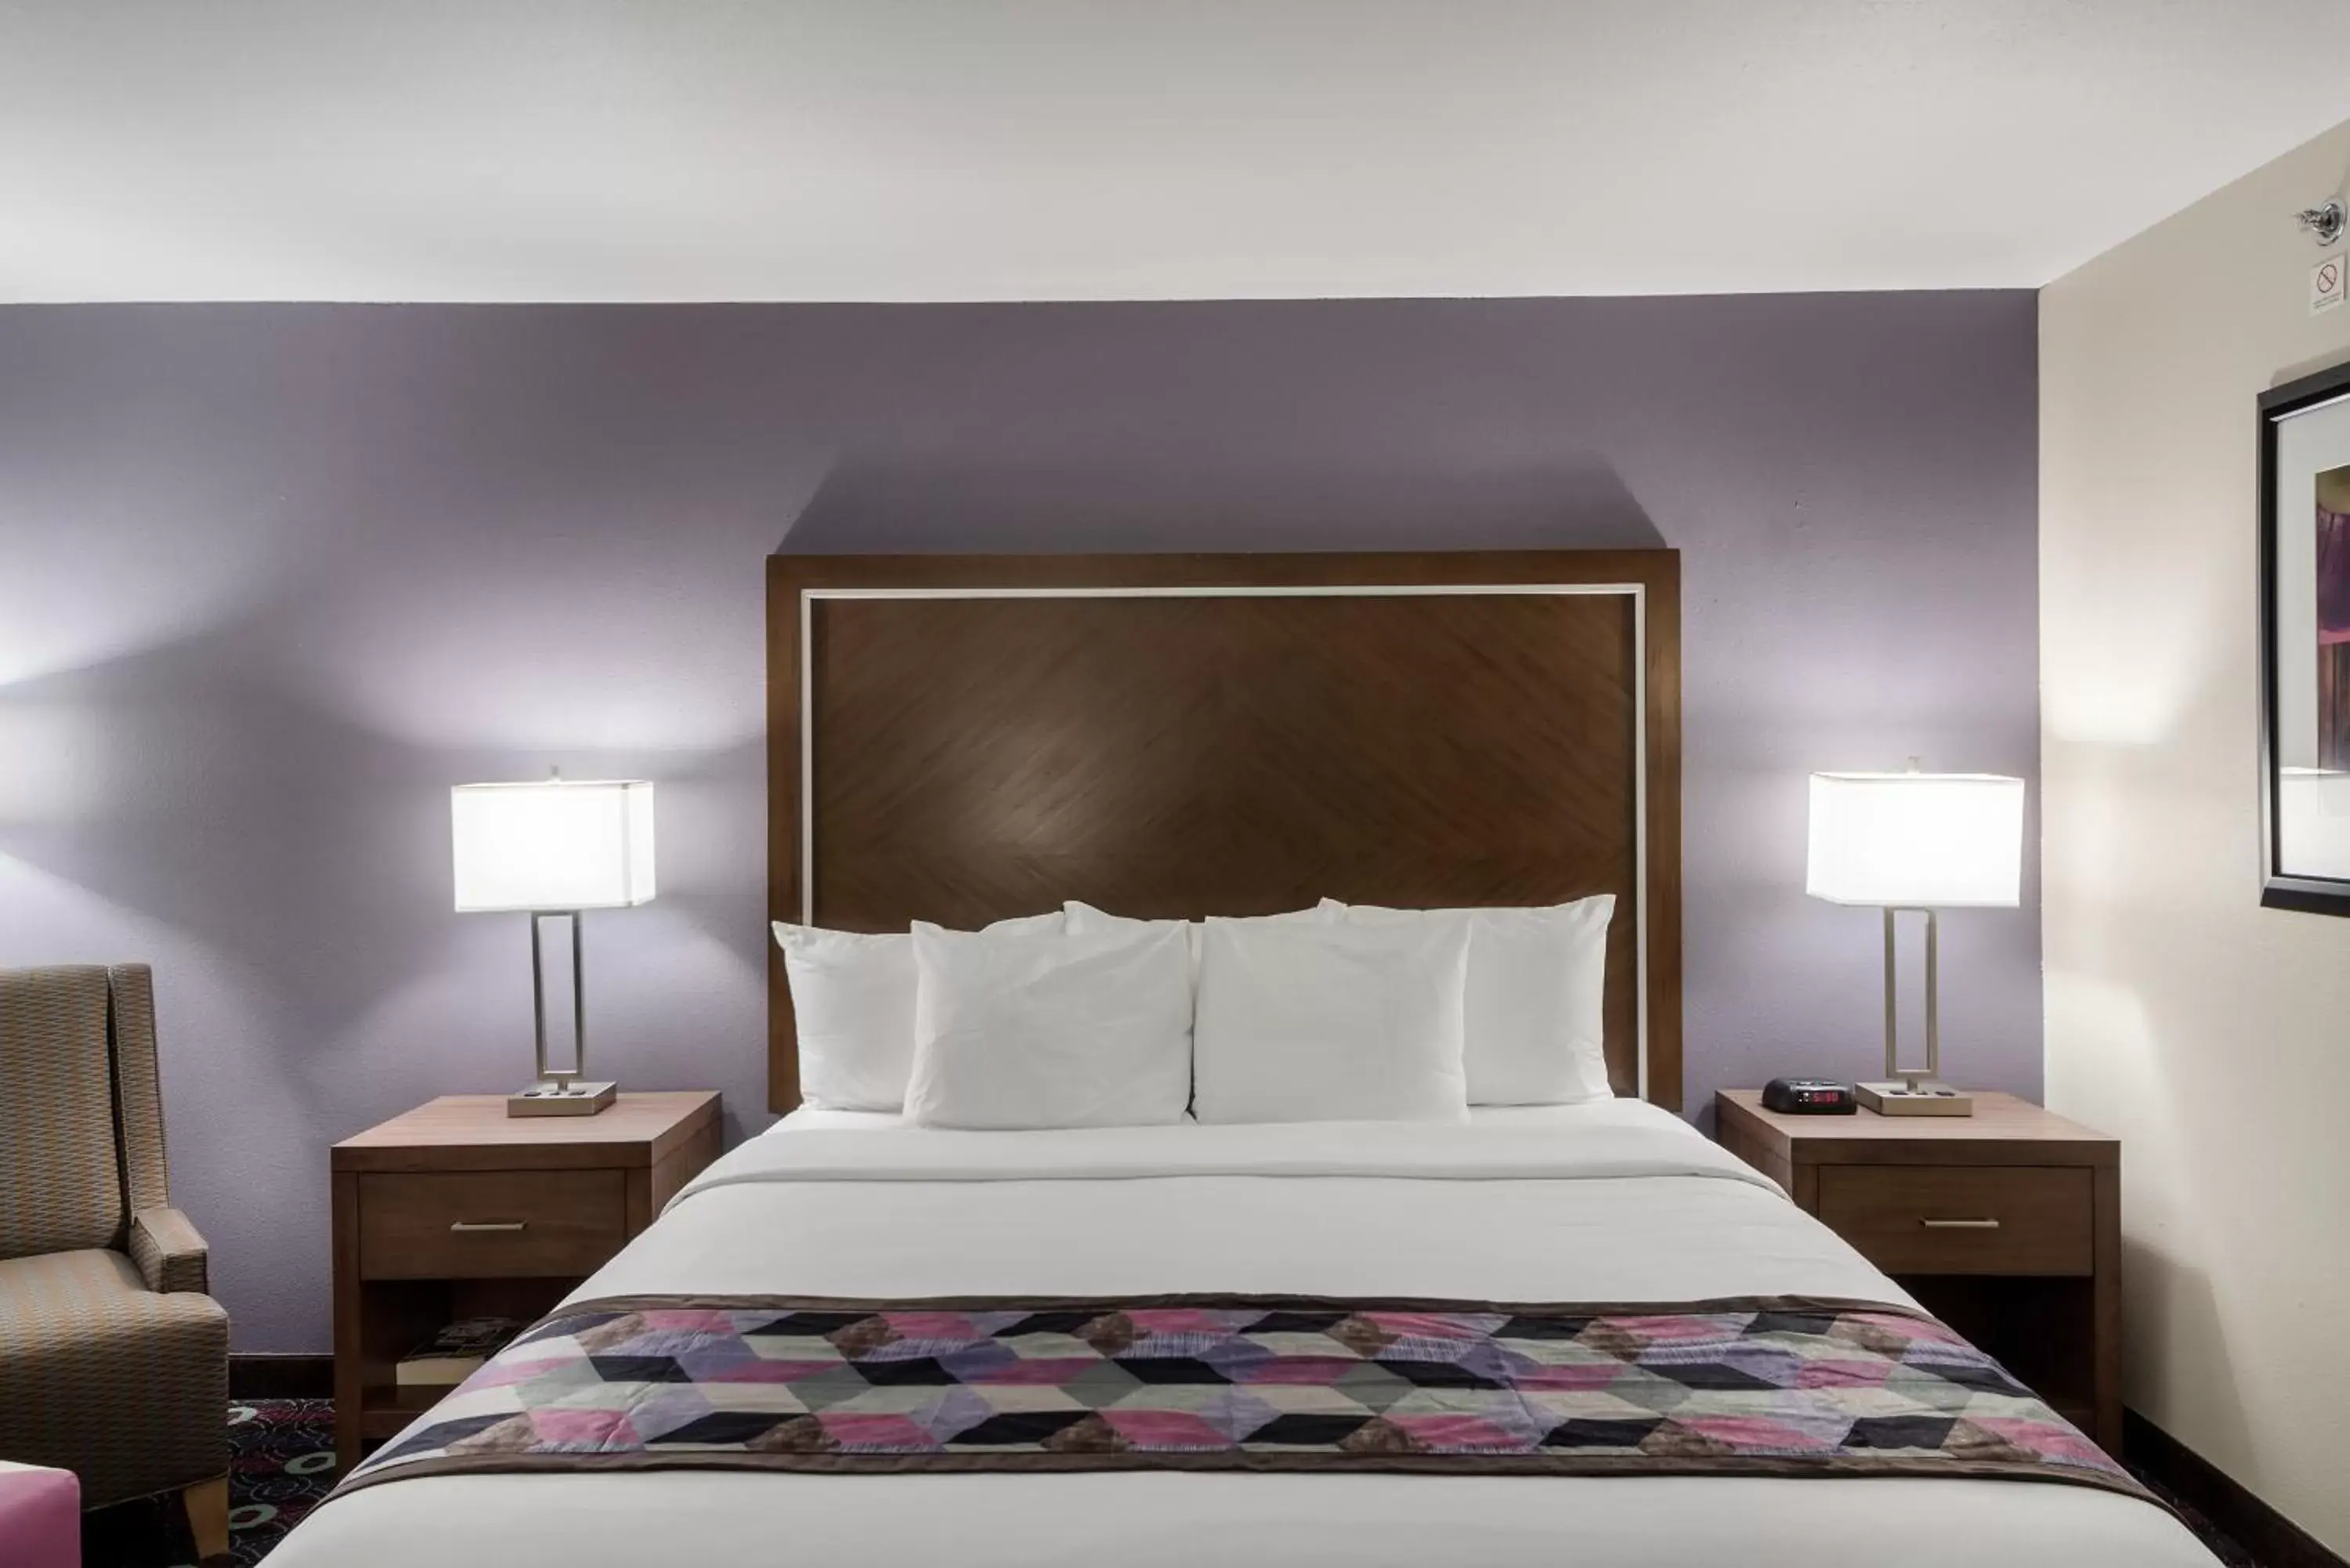 Bed, Room Photo in Comfort Inn Midtown